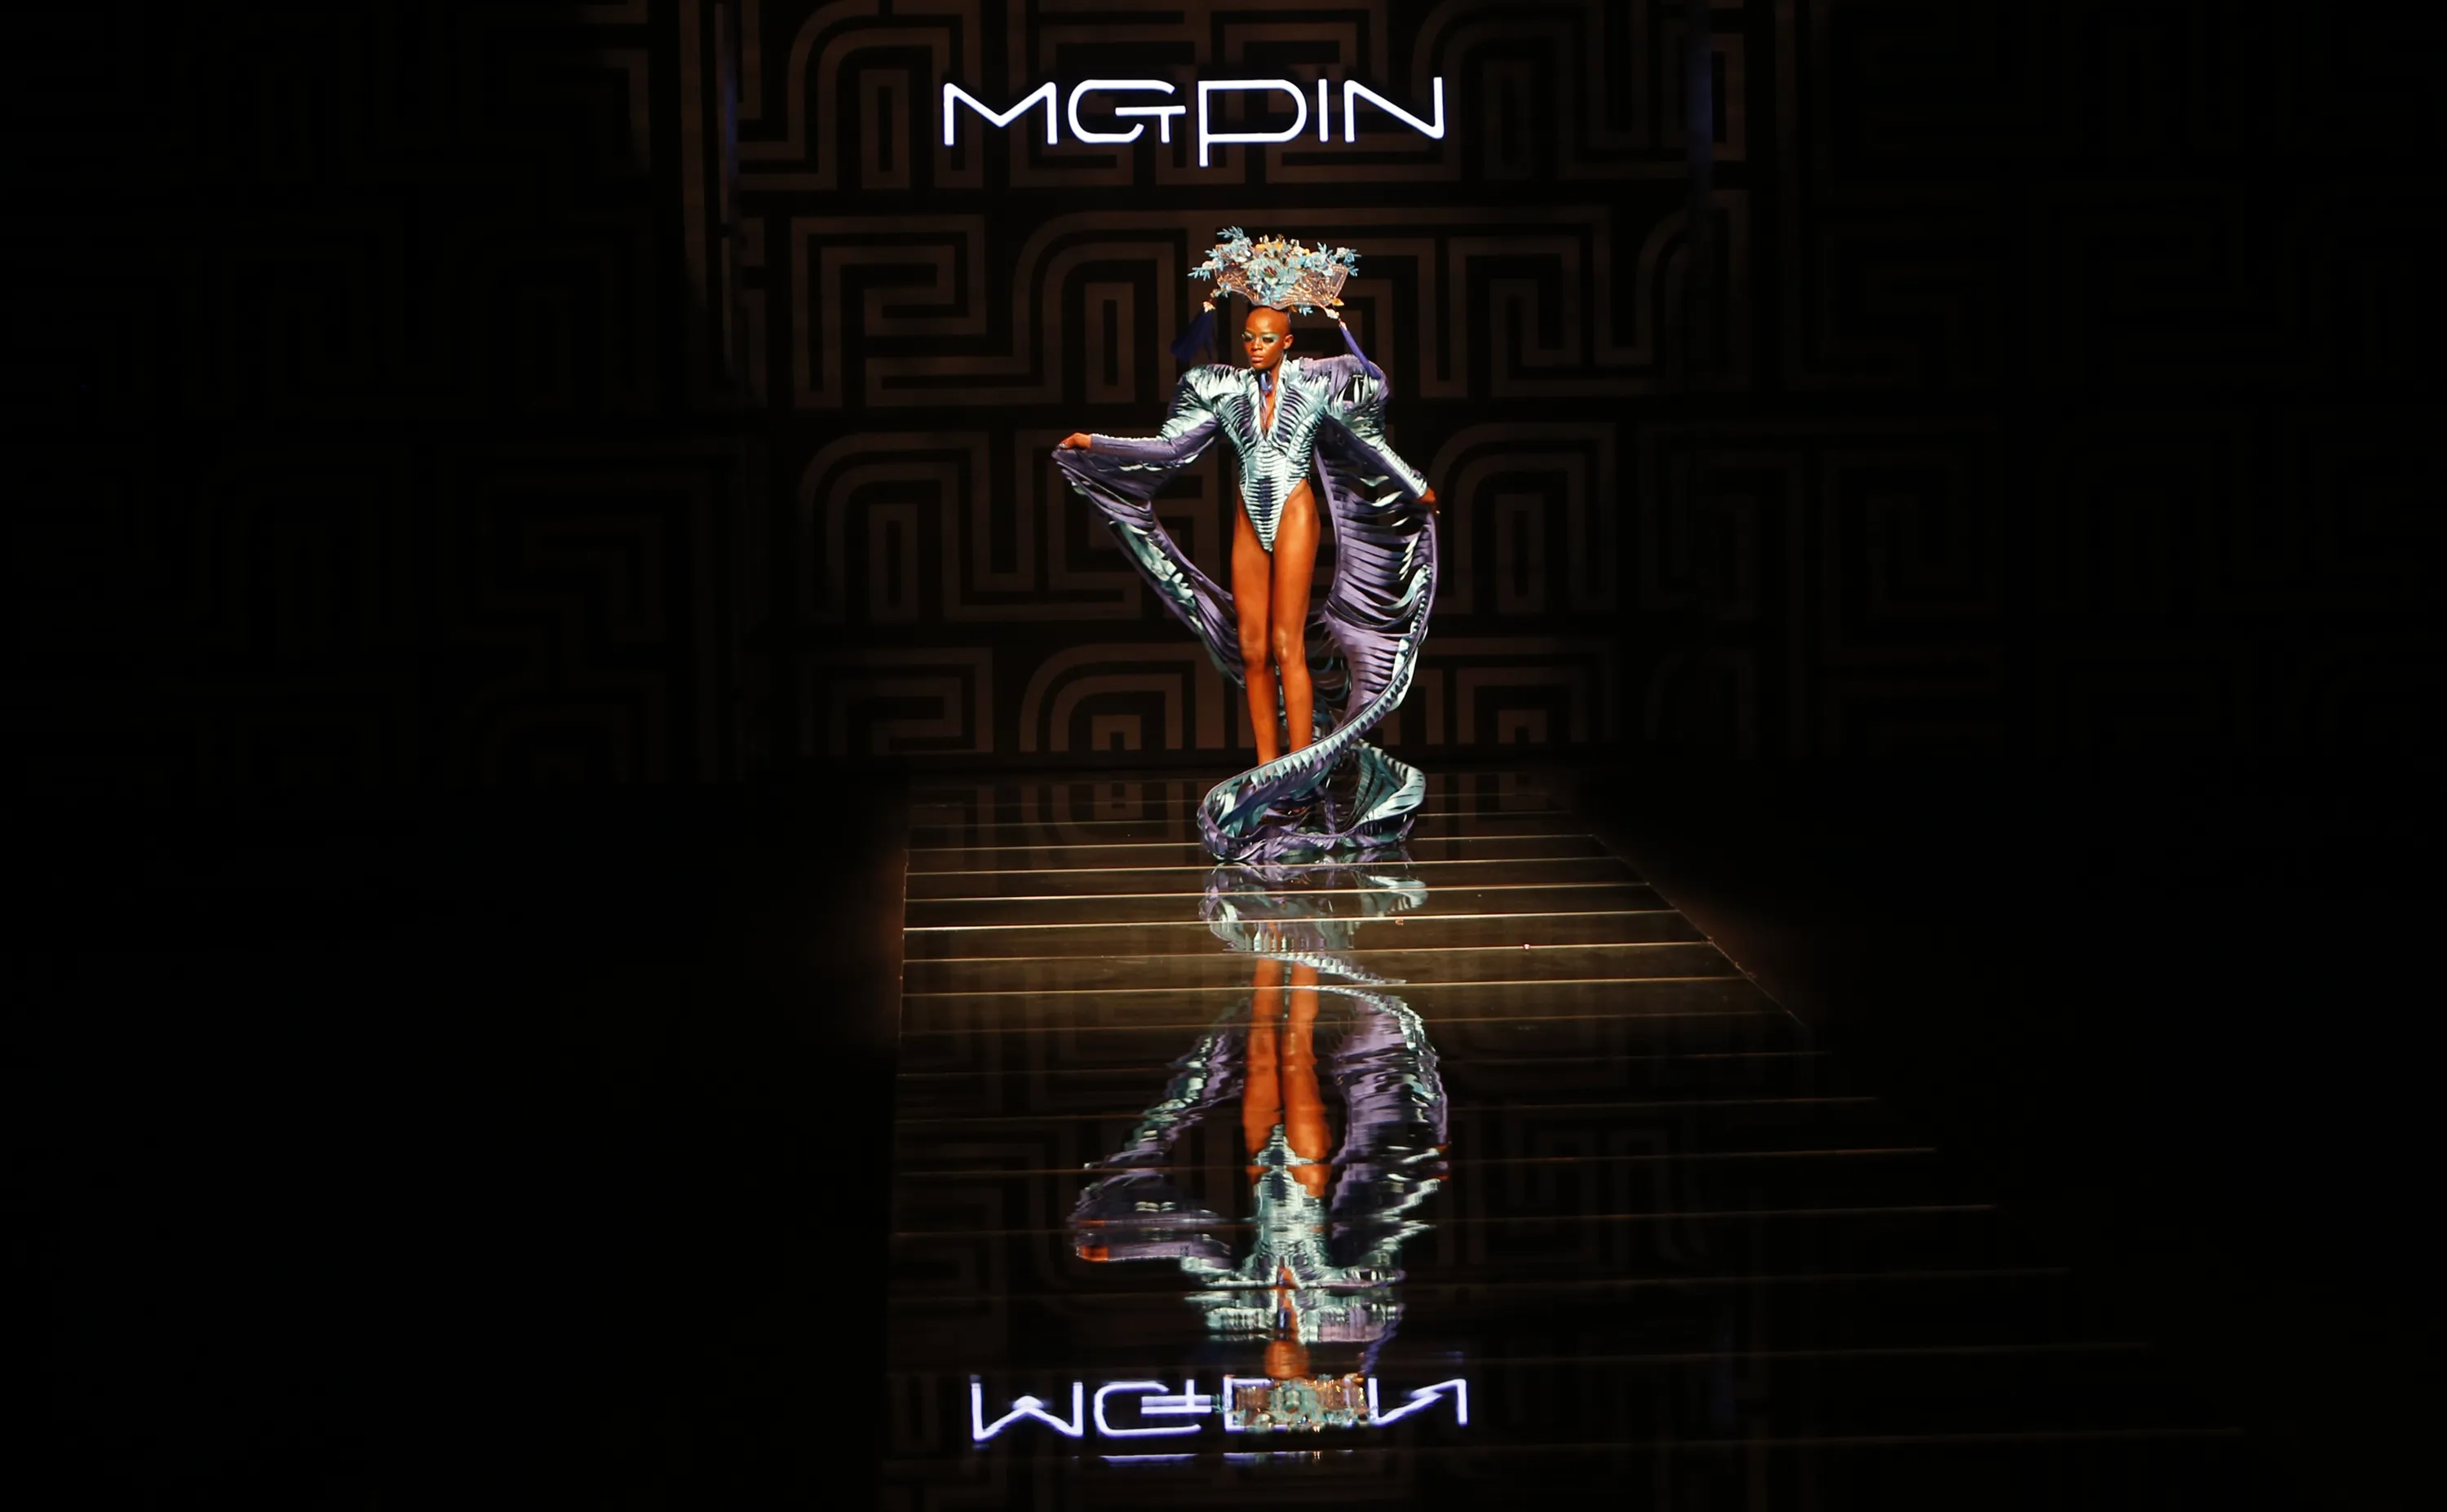 Mgpin 2015 Mao Geping Makeup Trend Launch During China Fashion Week